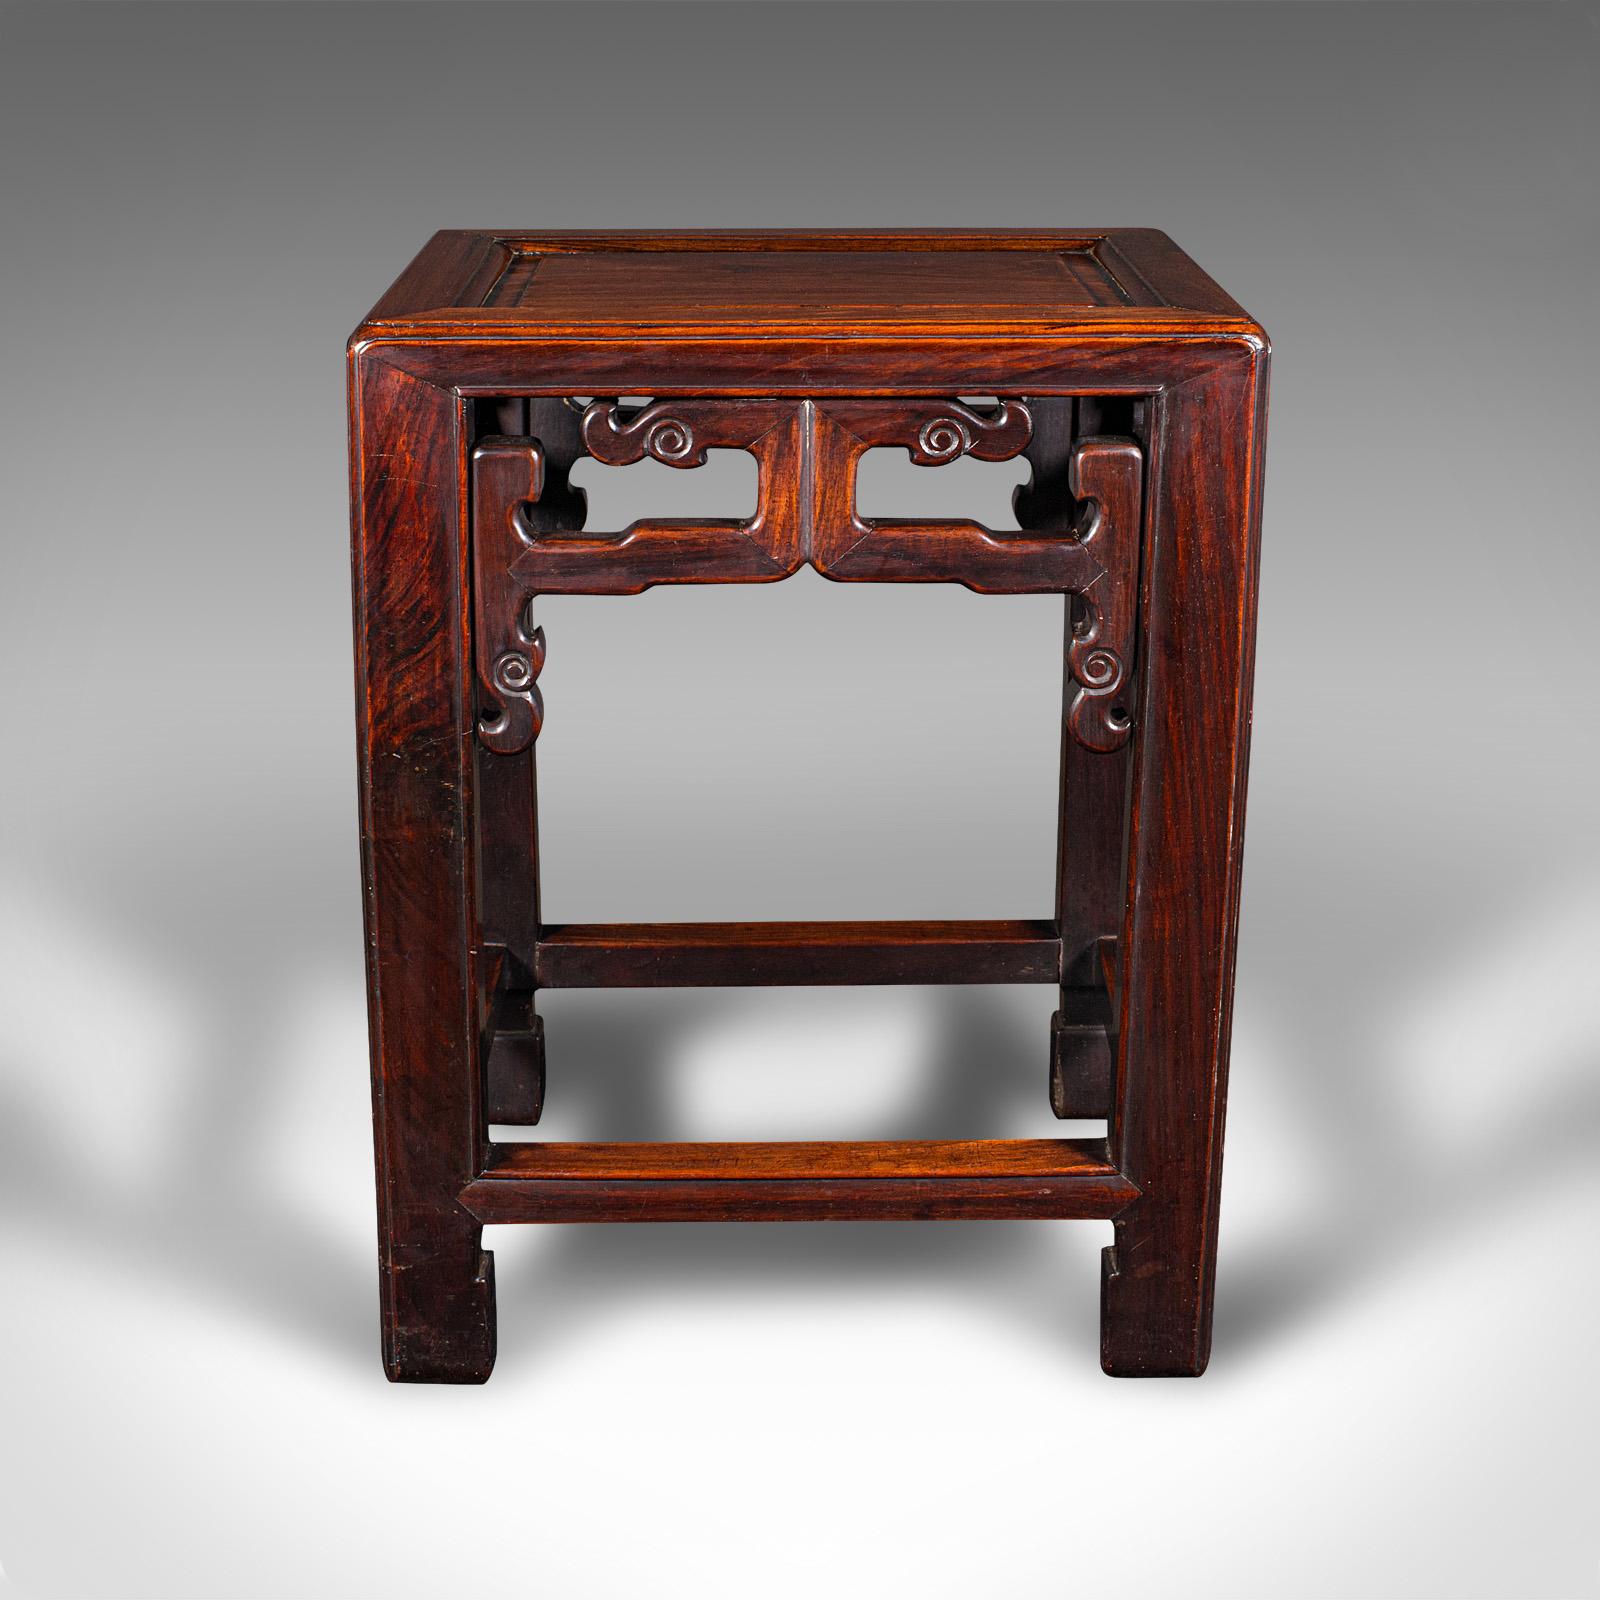 Il s'agit d'une table d'appoint ancienne. Table de lampe ou jardinière chinoise en bois de rose, datant de la fin de la période victorienne, vers 1900.

Petite table de conception attrayante avec un poids substantiel
Présente une patine d'usage